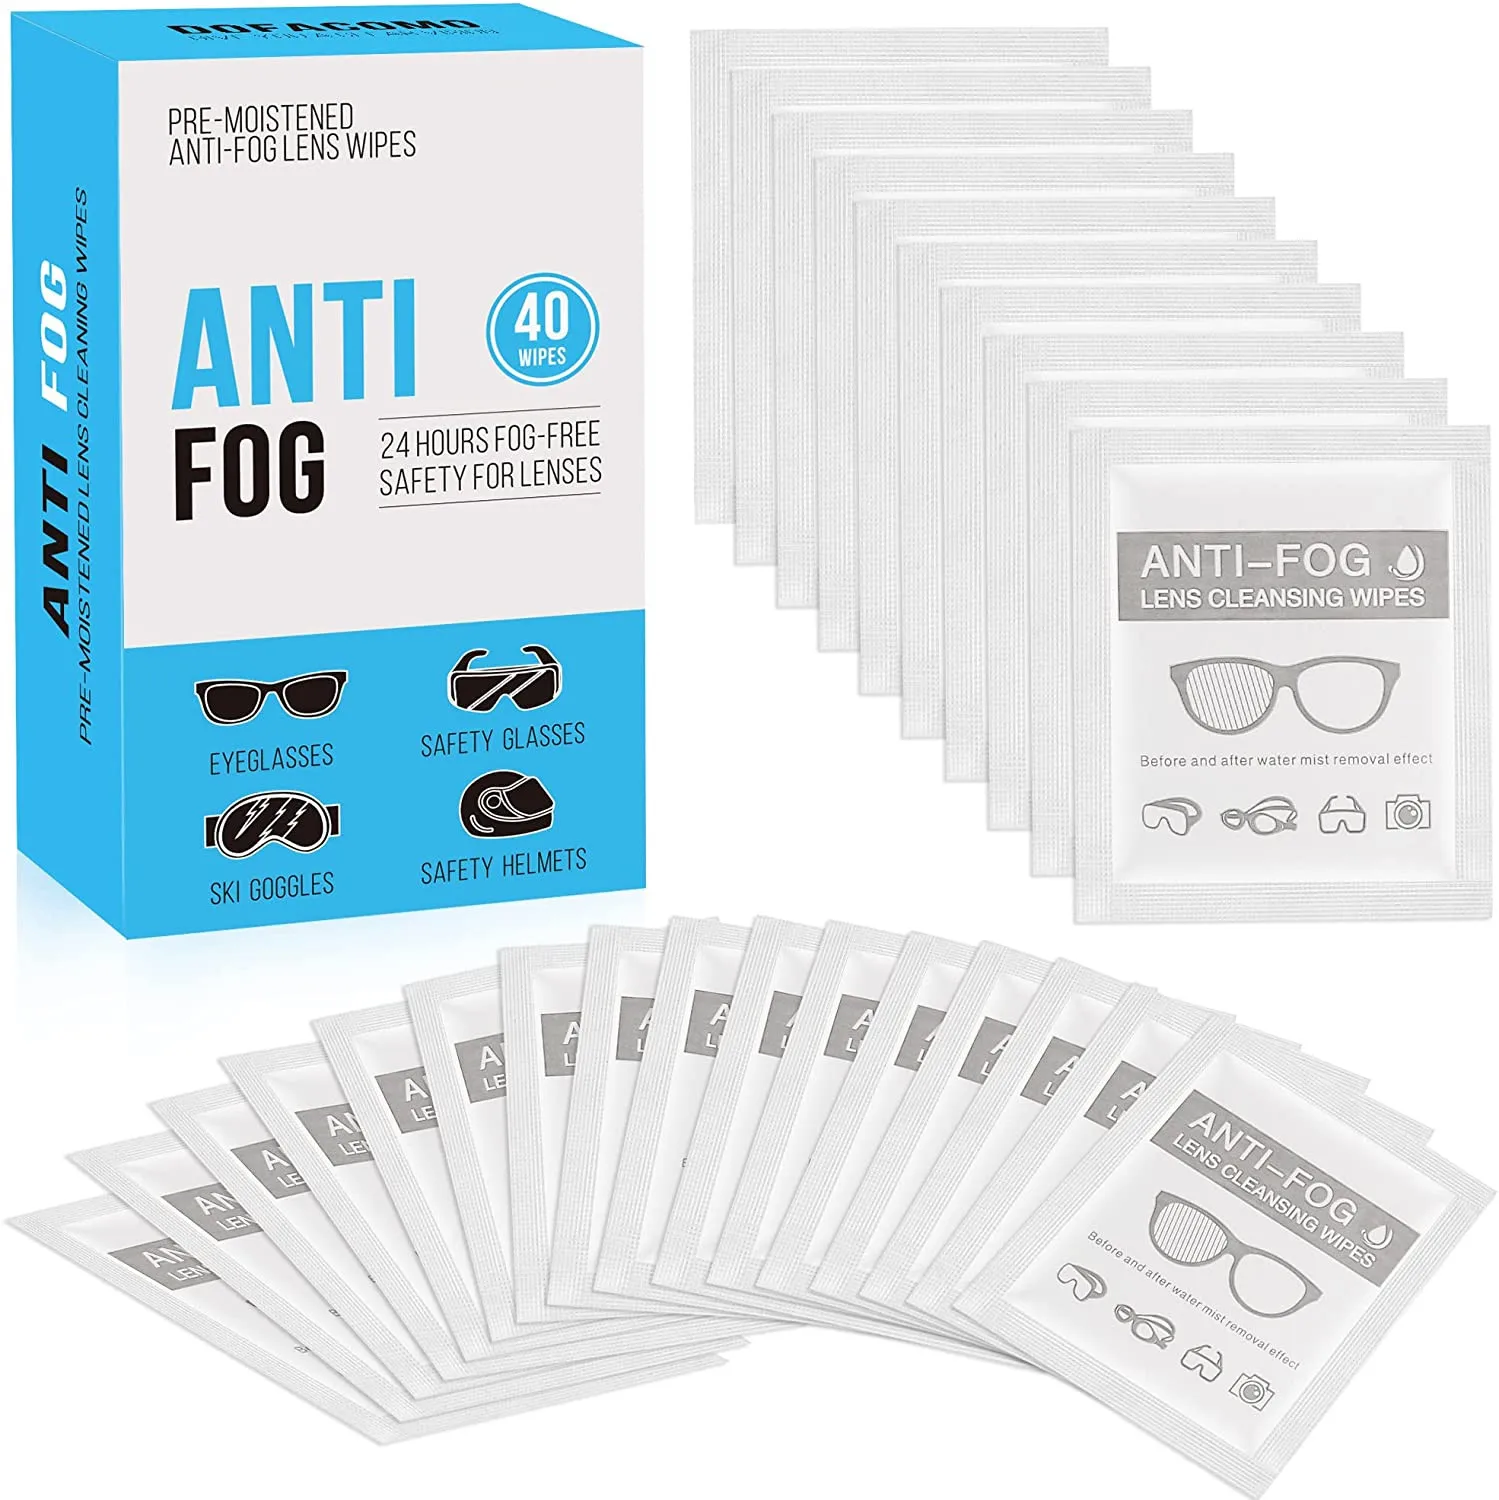 Anti Fog Wipe Pre moistened Wipes for Glasses, Binoculars, Face Shields, Ski Masks Fogging on Glass